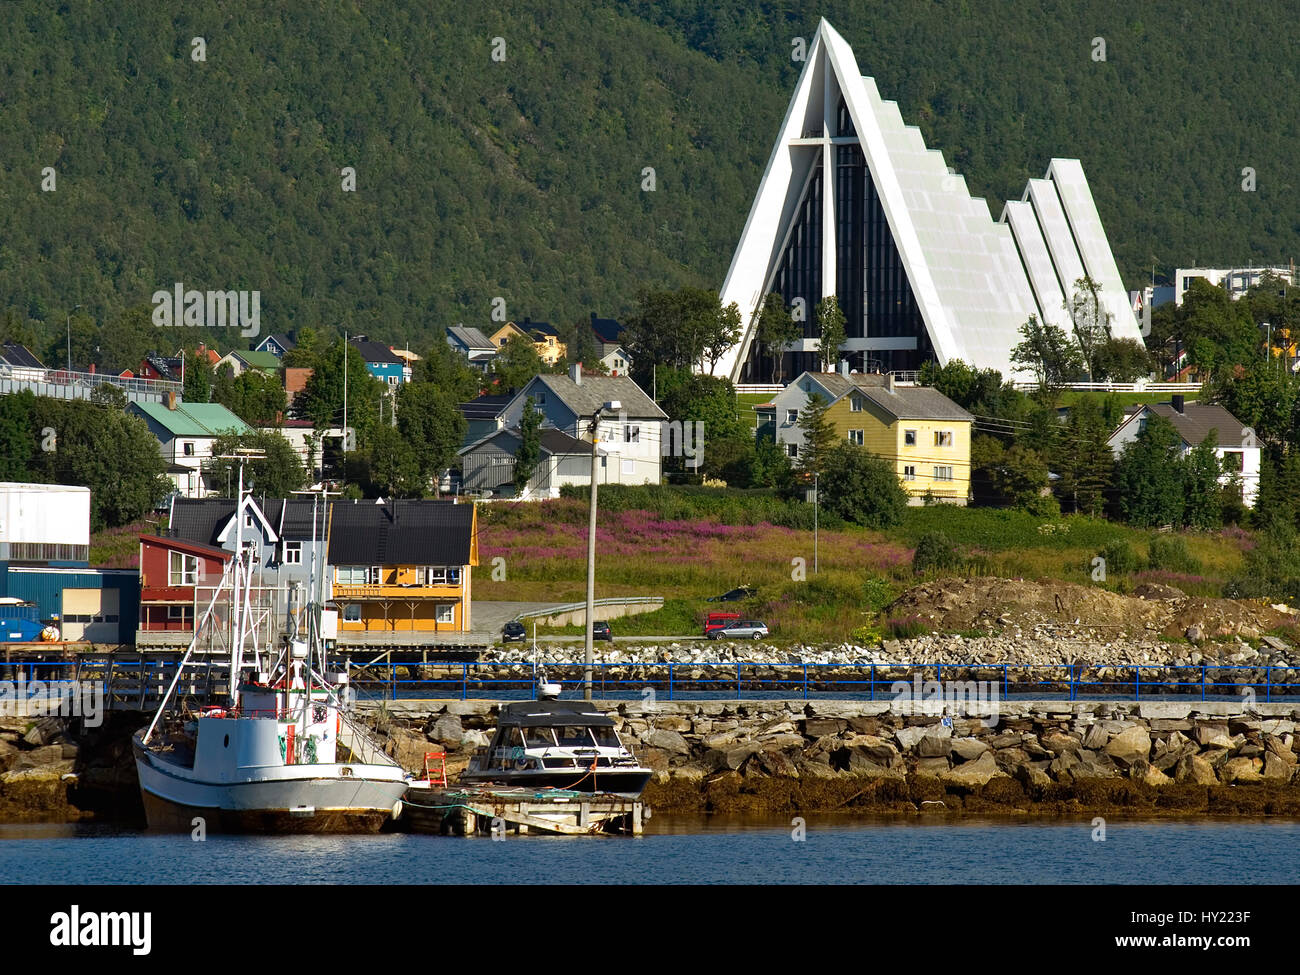 Questo stock foto mostra il ghiaccio Cattedrale sul mare nel porto di Tromsoe nel nord della Norvegia. Di fronte è possibile vedere alcune case colorate e le barche con i Foto Stock